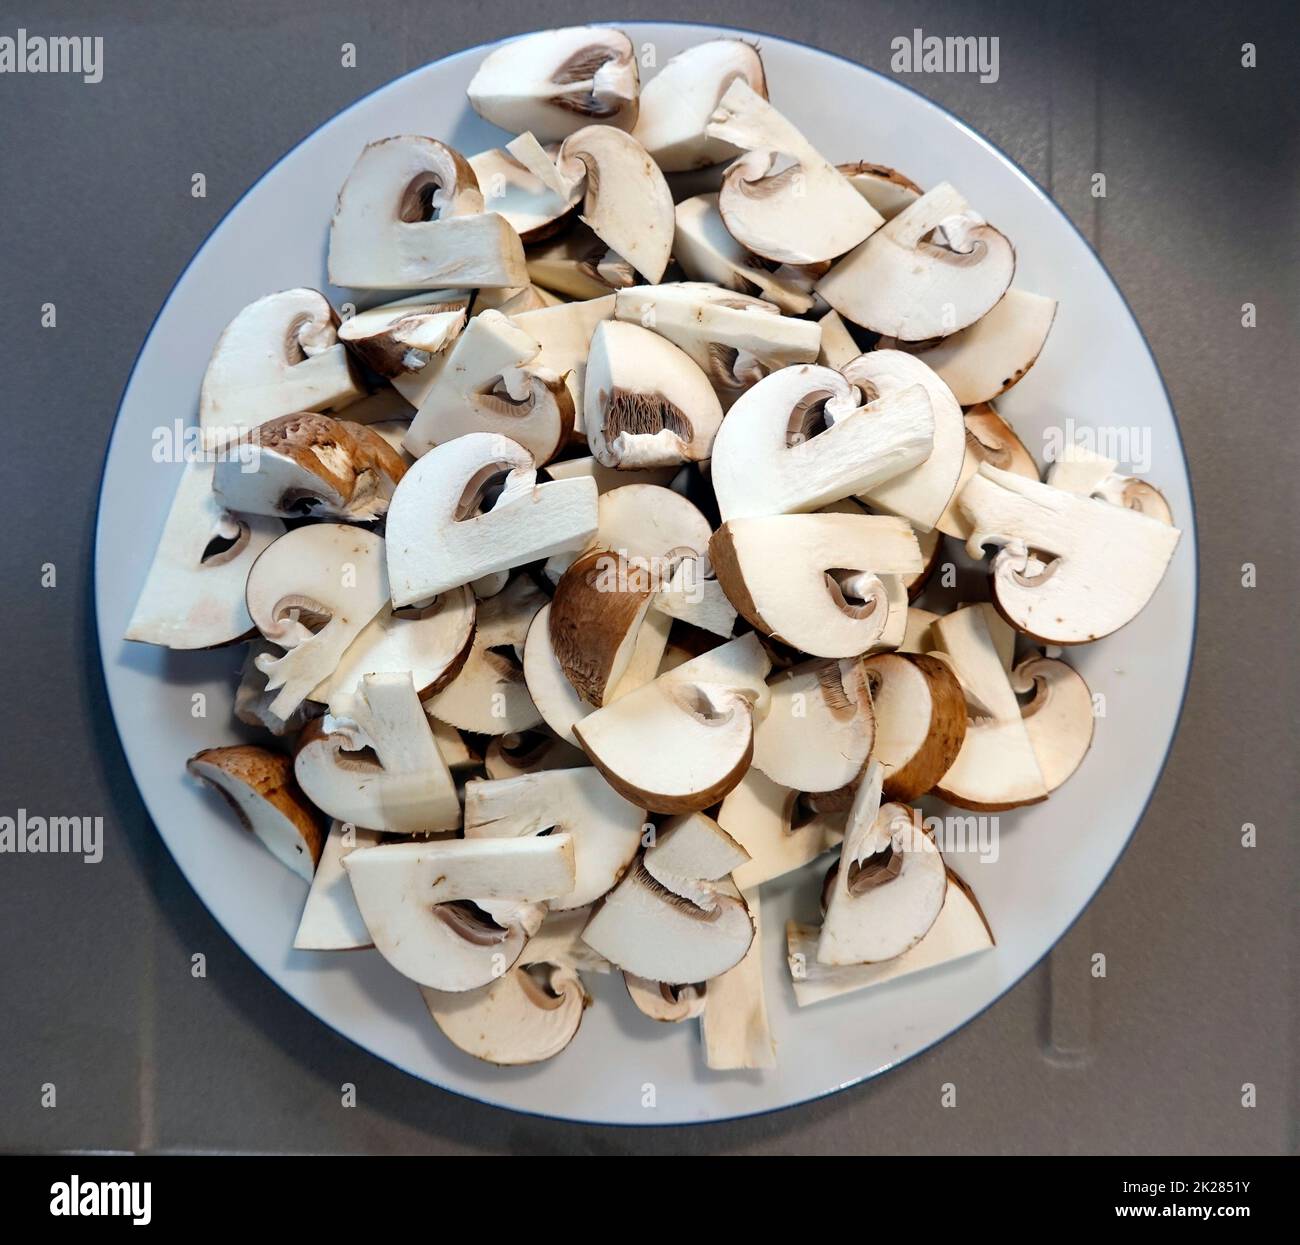 frische Kultur-Champignons liegen geschnitten auf einem Teller, um sie zu braten Foto Stock